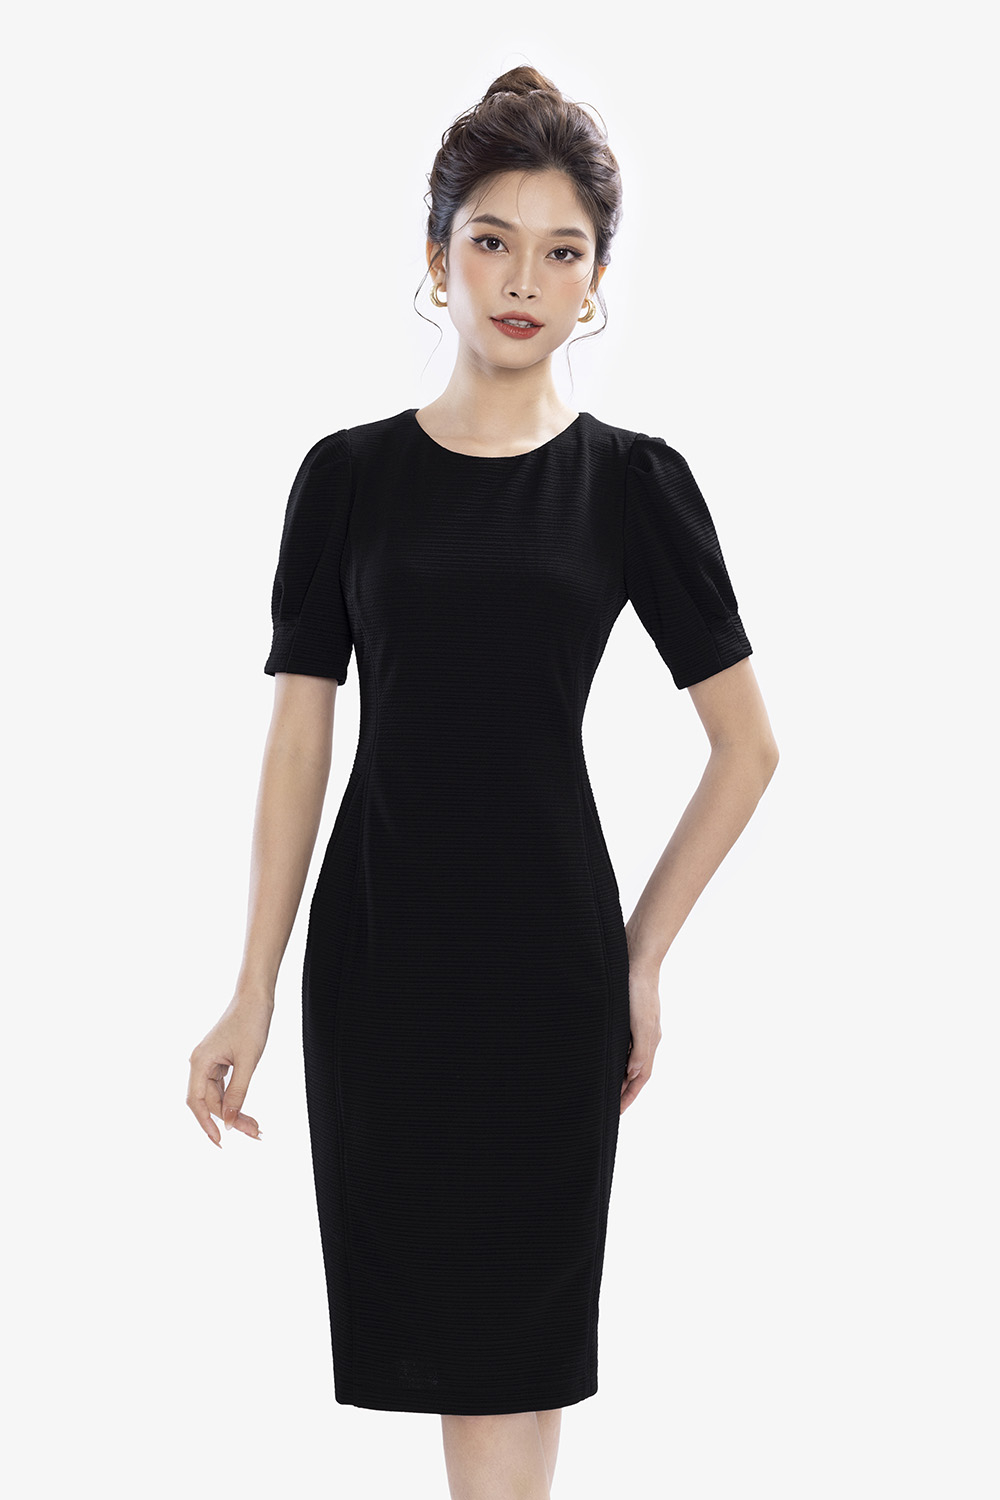 Đầm suông đơn giản màu xanh cổ vịt viền đen - C3343